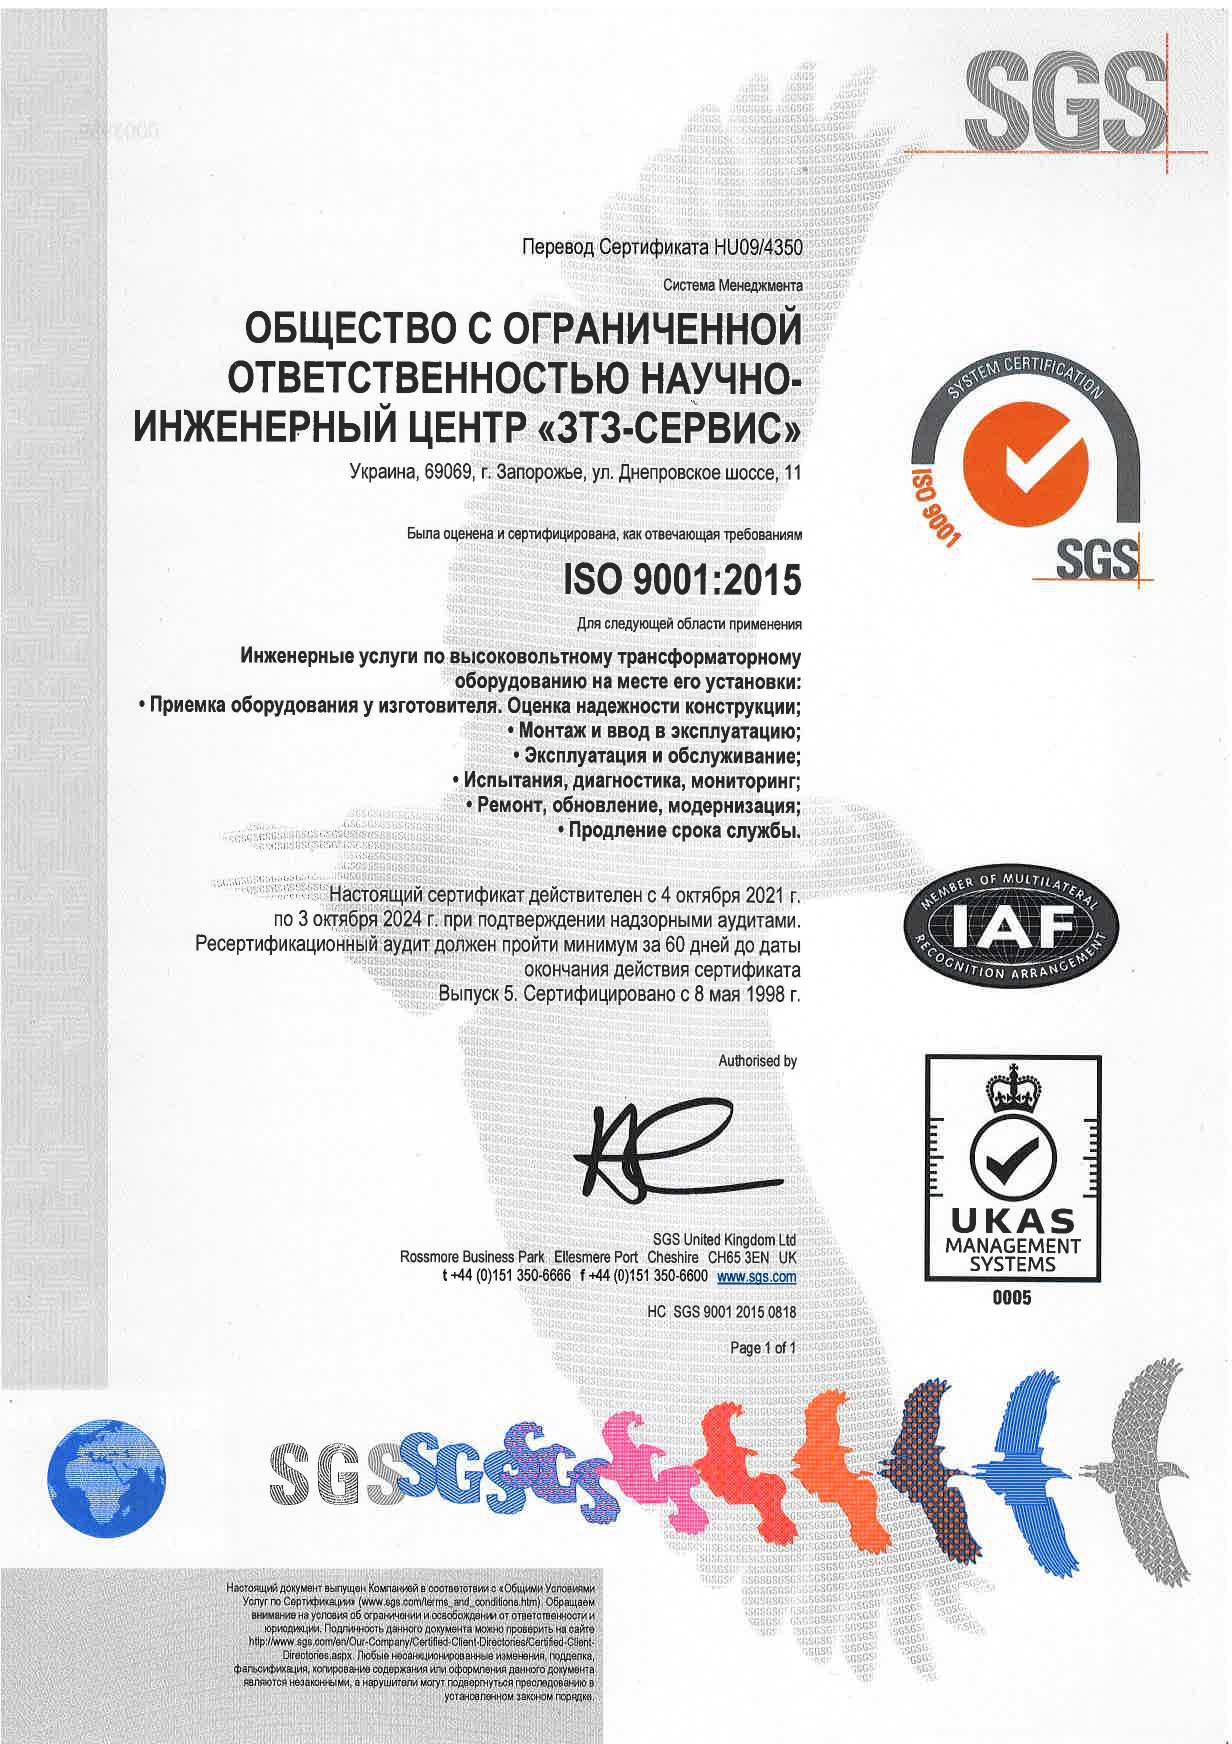 Ре-сертификационный аудит по Международному стандарту 9001:2015 пройден успешно